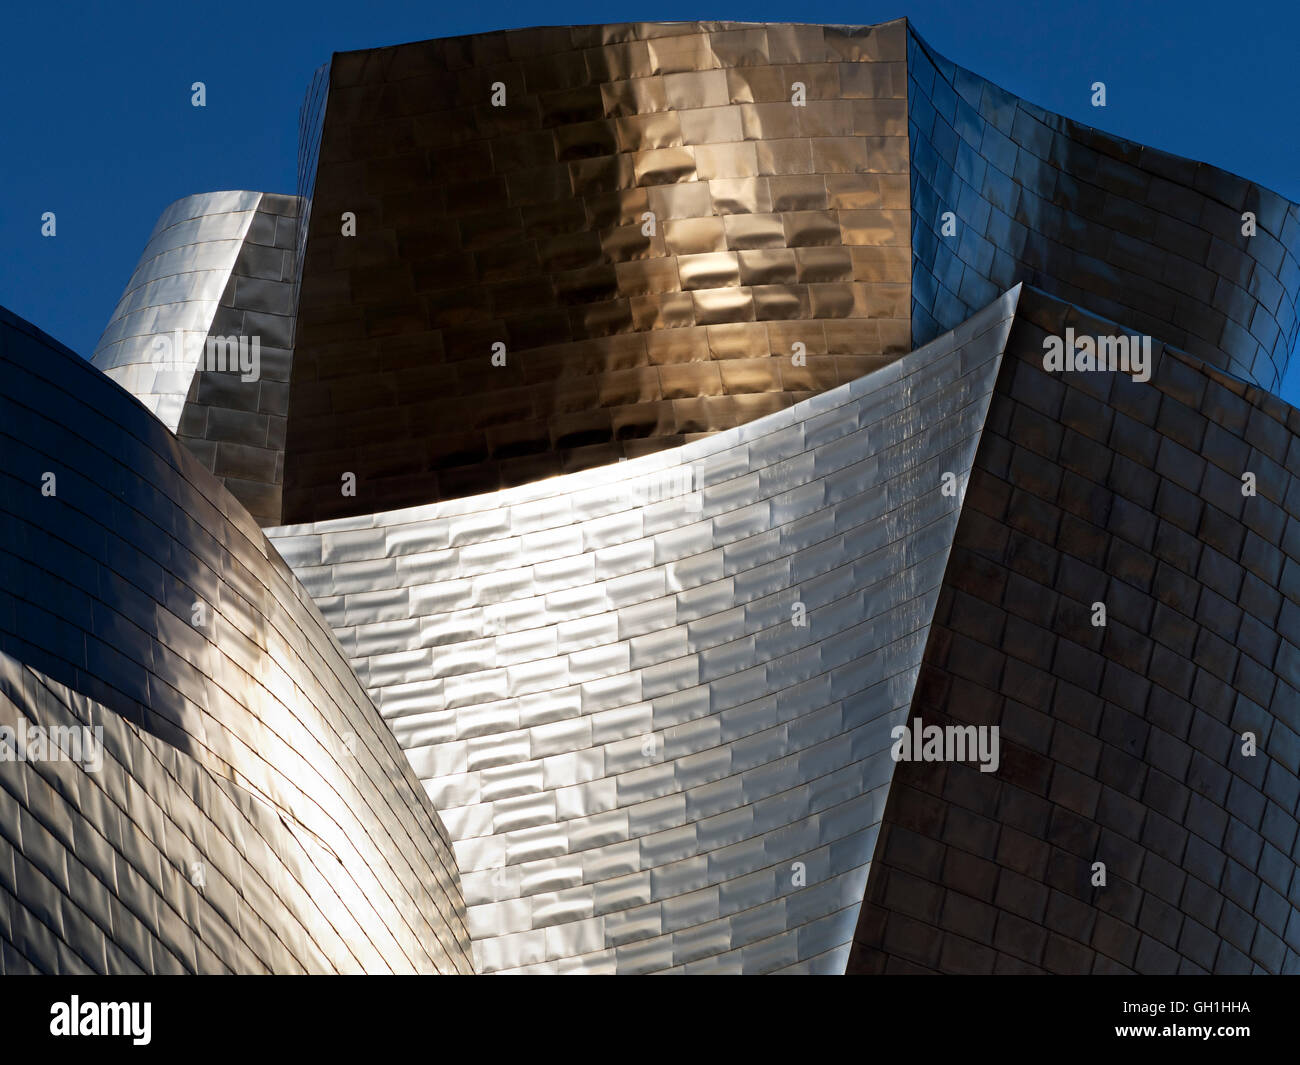 The iconic Guggenheim Museum in Bilbao, Spain Stock Photo